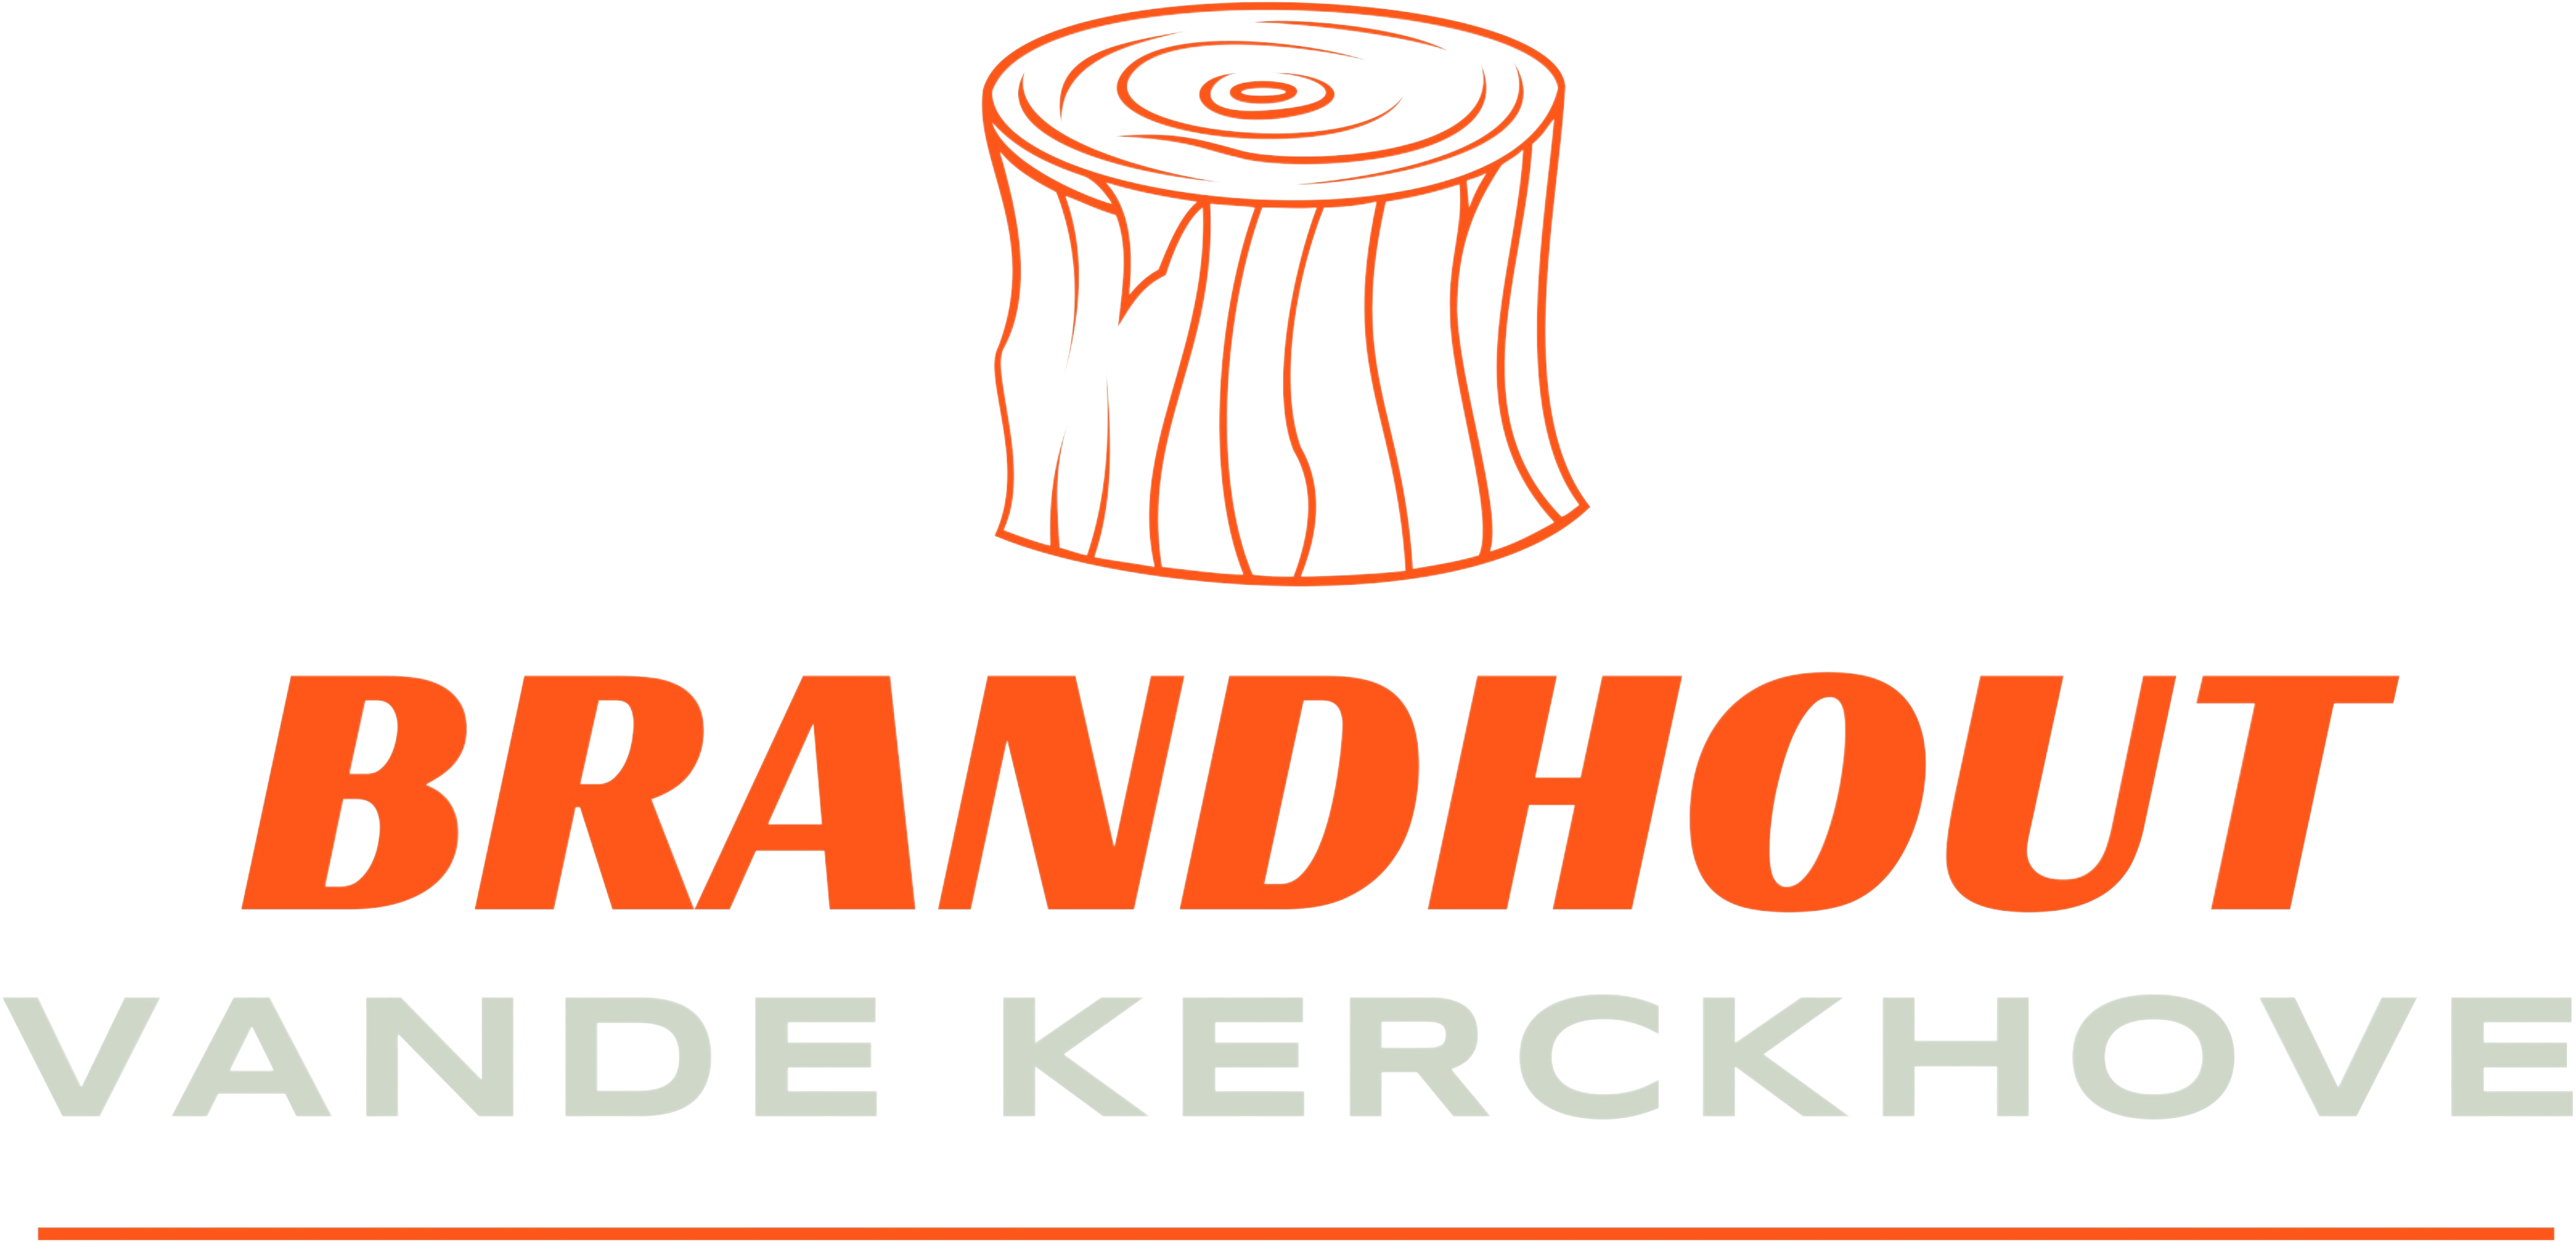 Brandhout Vdk